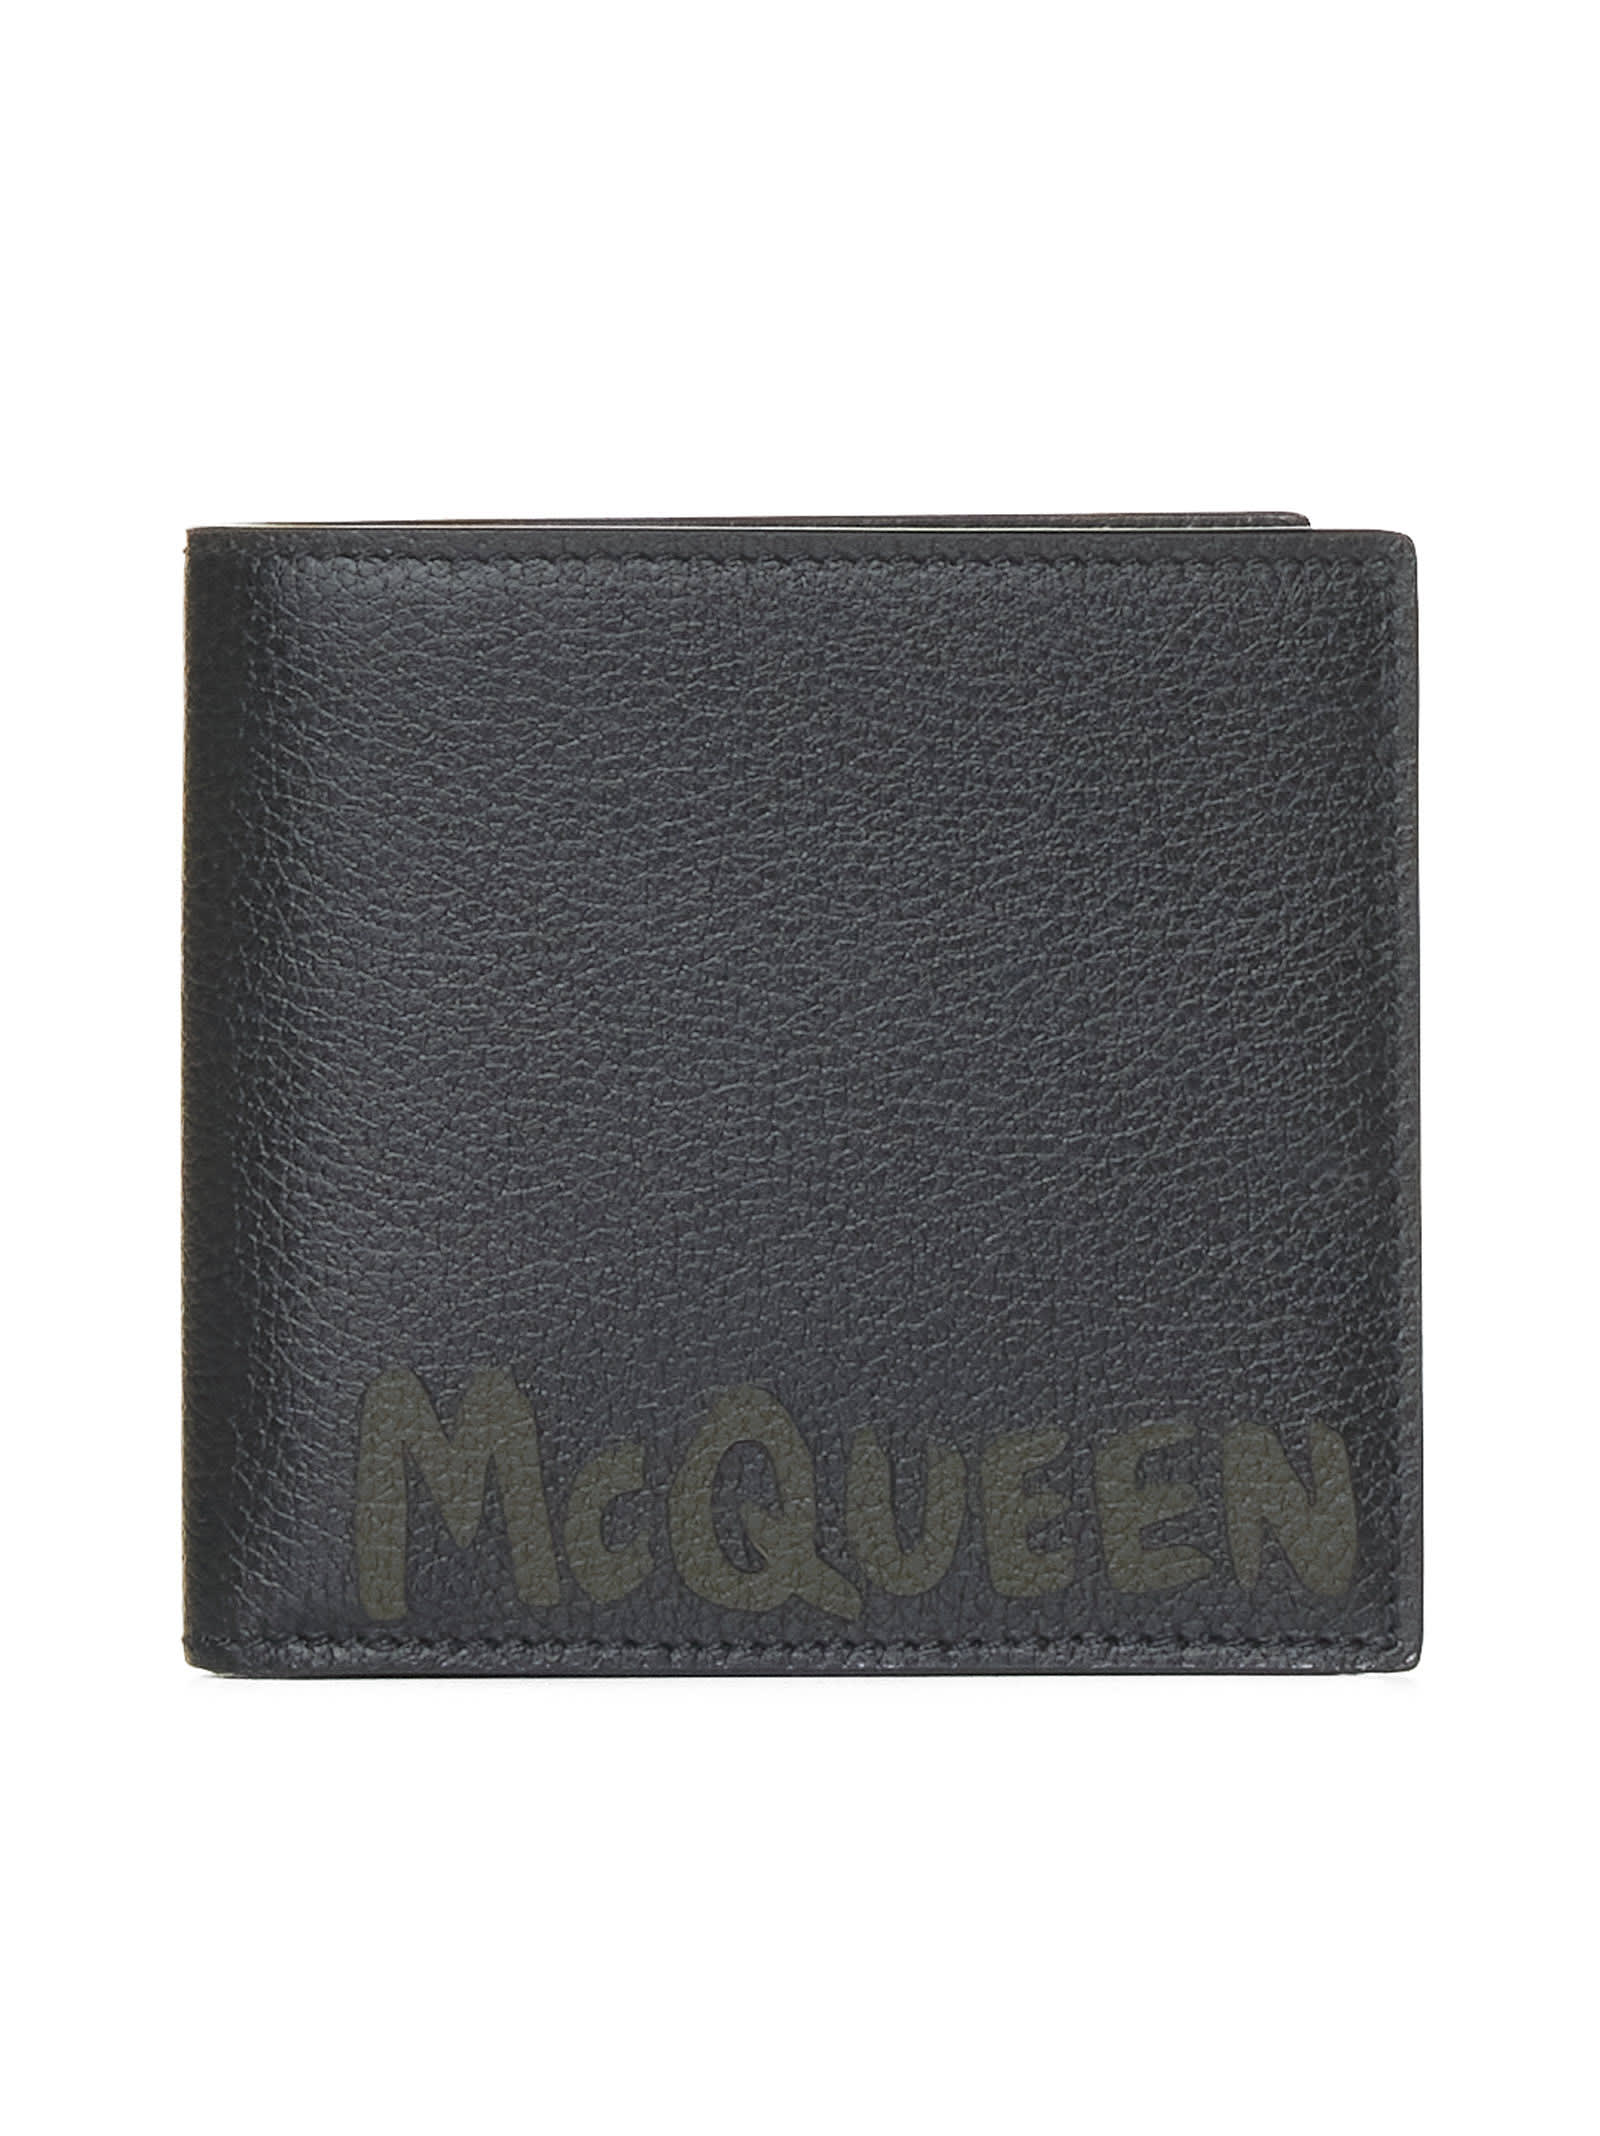 Alexander Mcqueen Wallet In Black/khaki